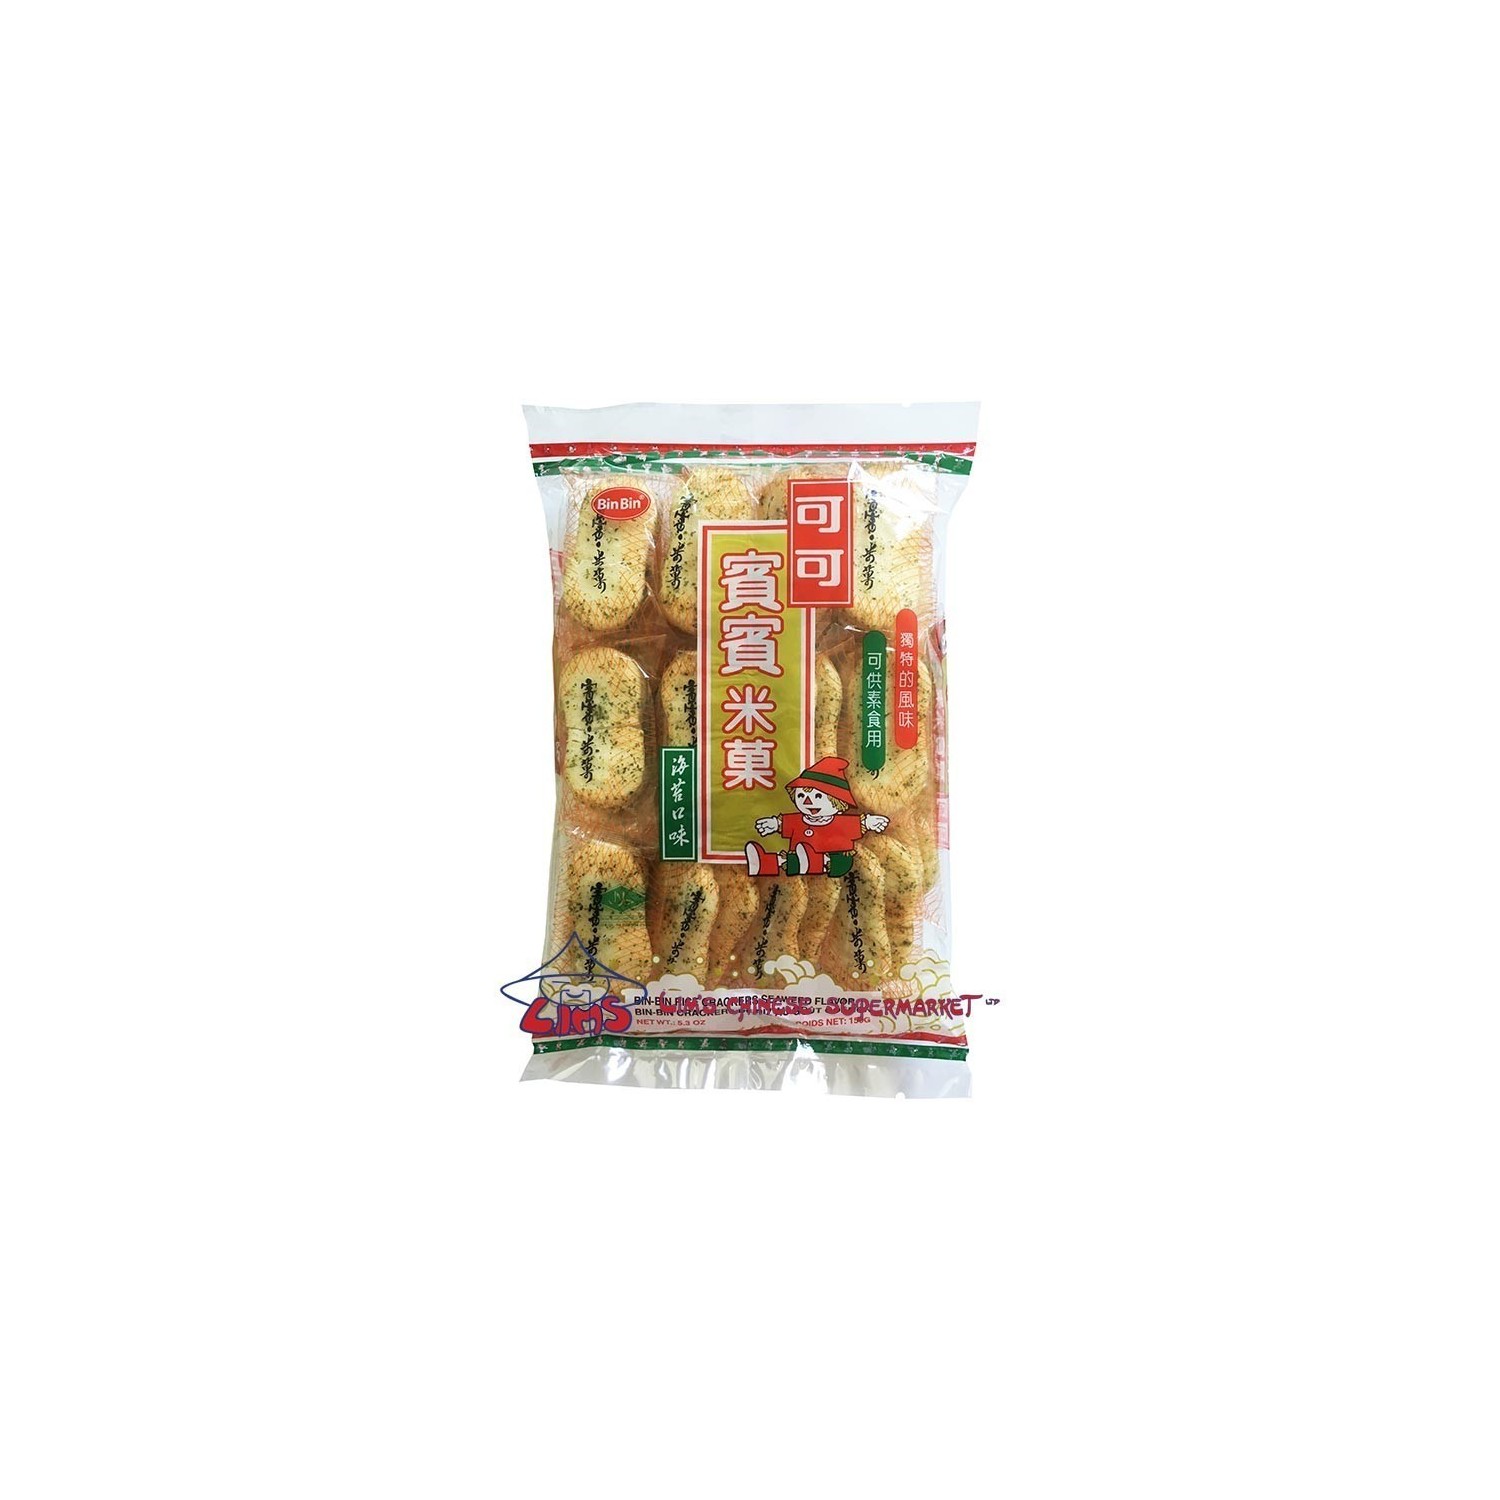 Bin Bin - 150g - Rice Crackers (Seaweed)